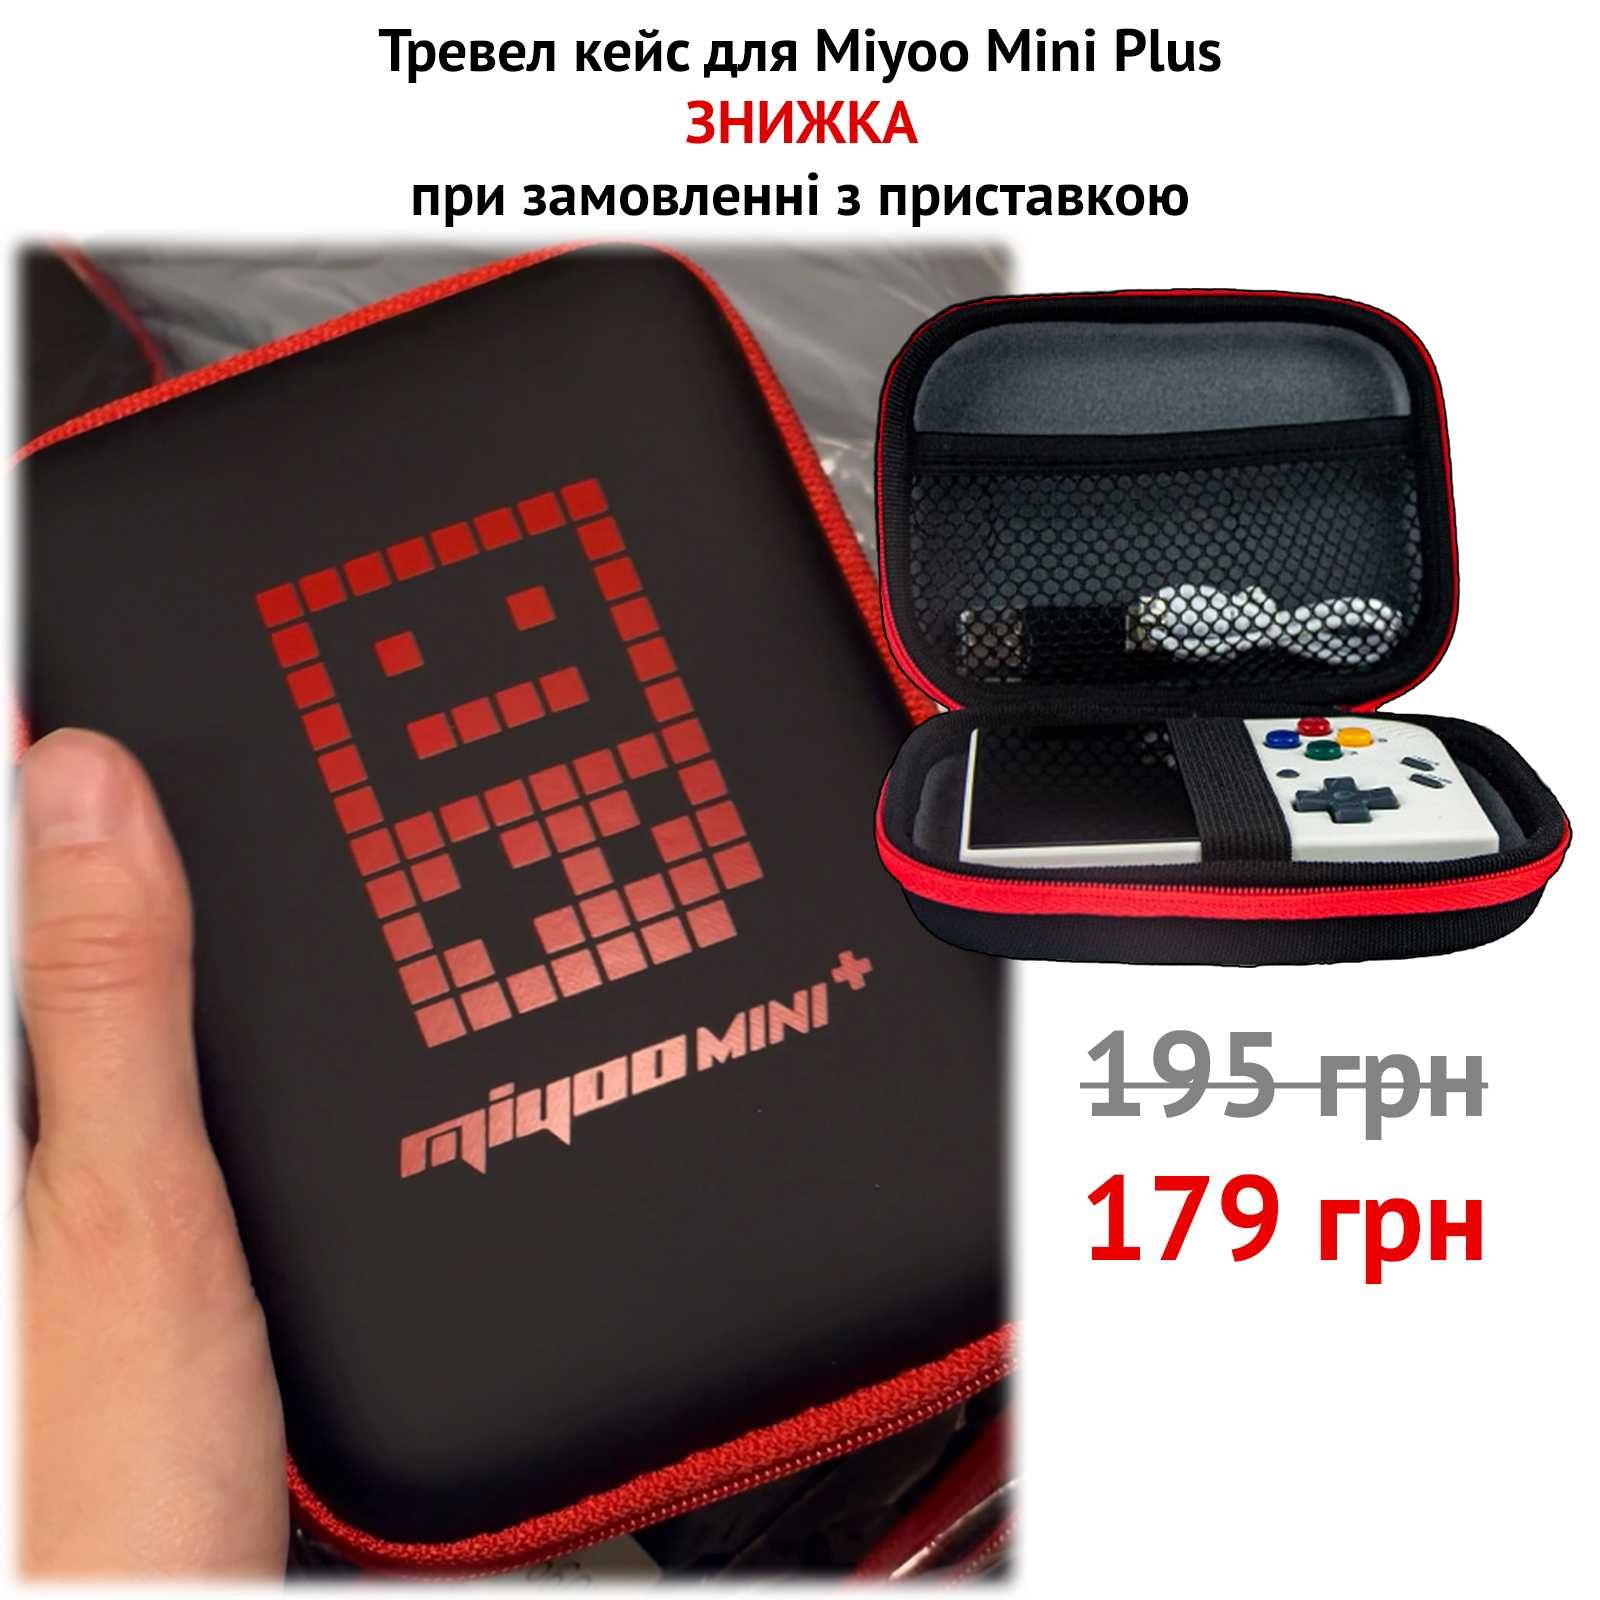 Нова ігрова ретро приставка Miyoo Mini Plus 64 гб з іграми